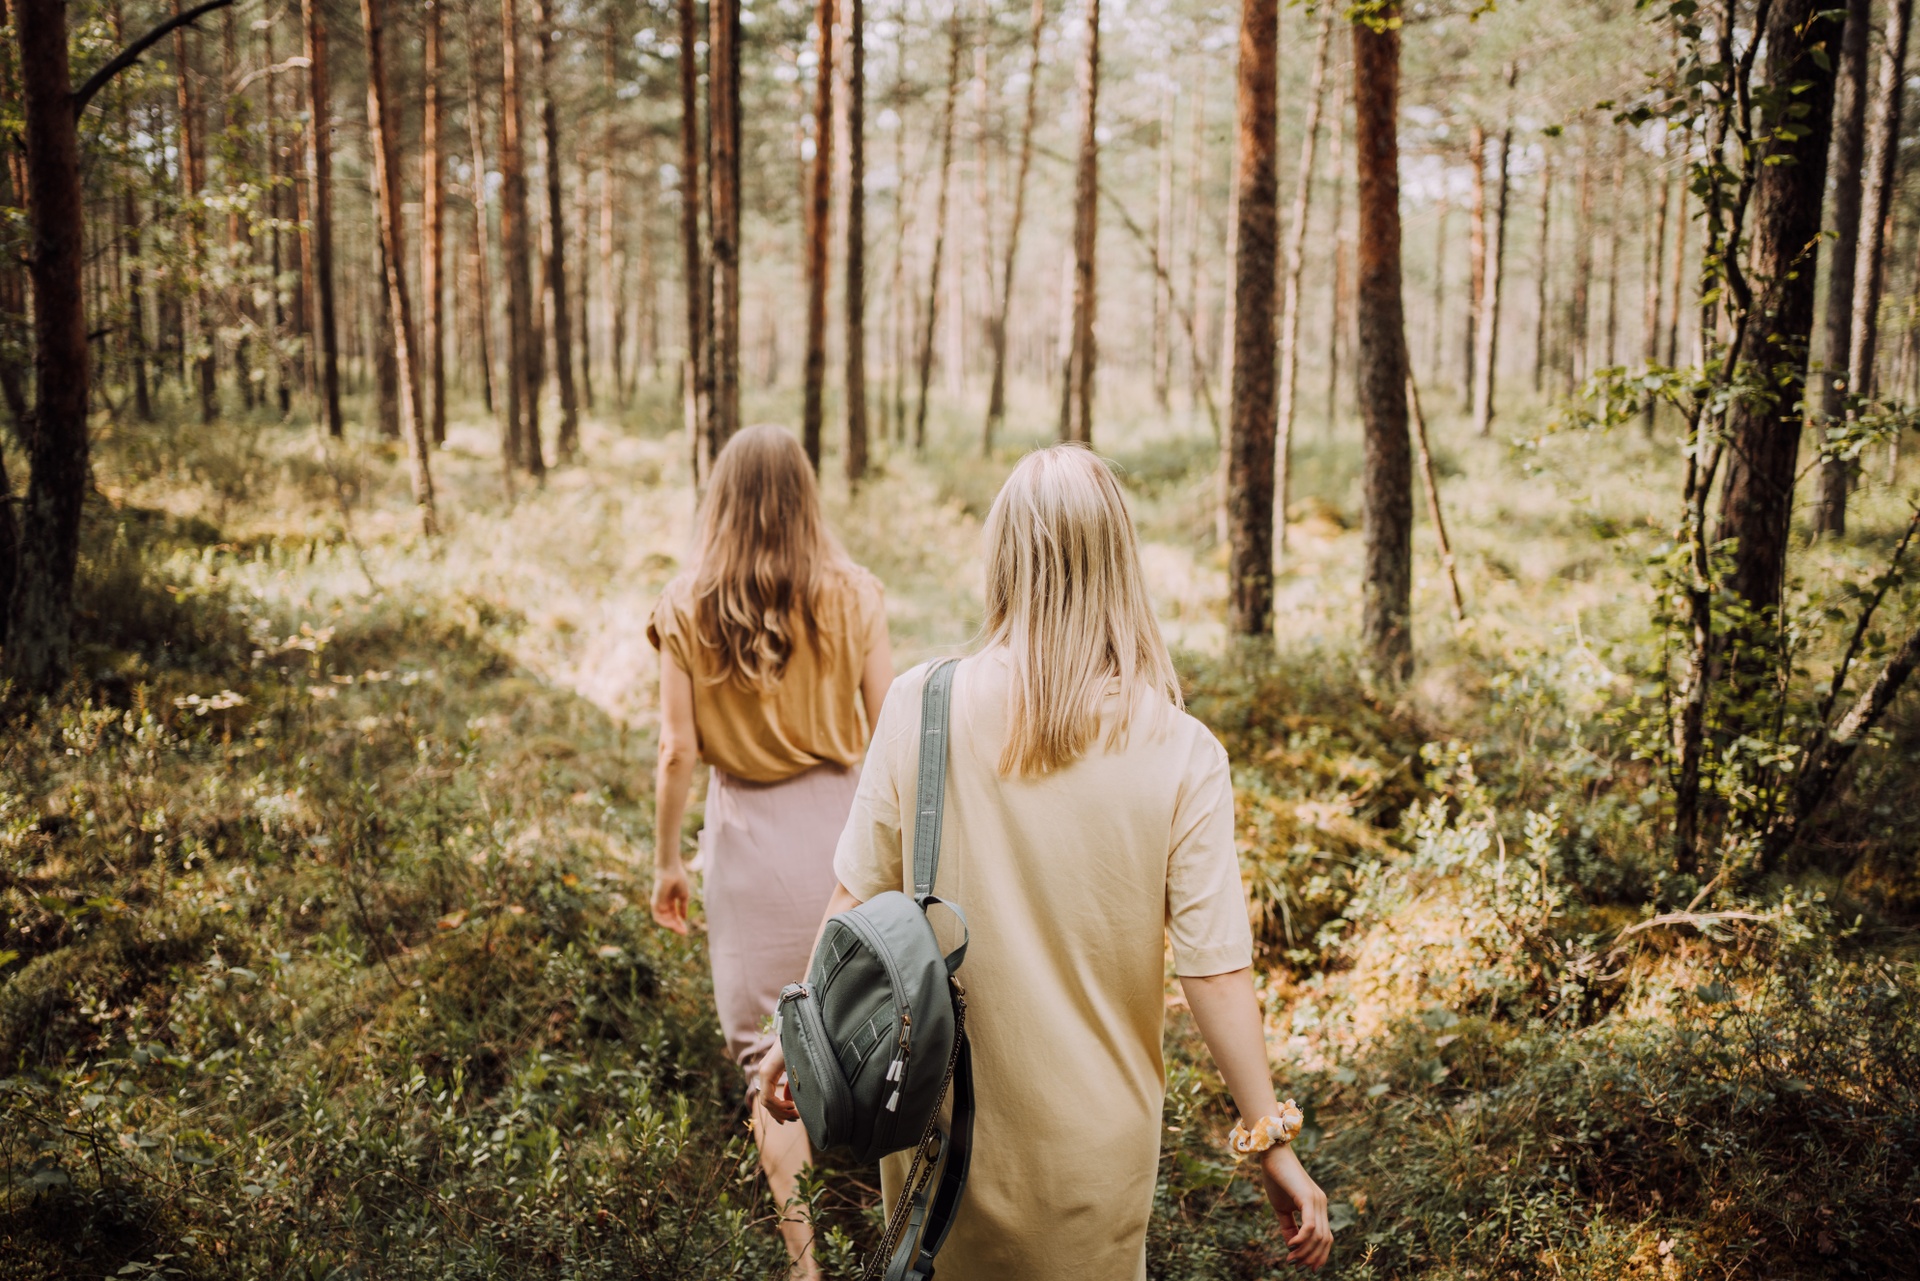 2 women walking in the forest